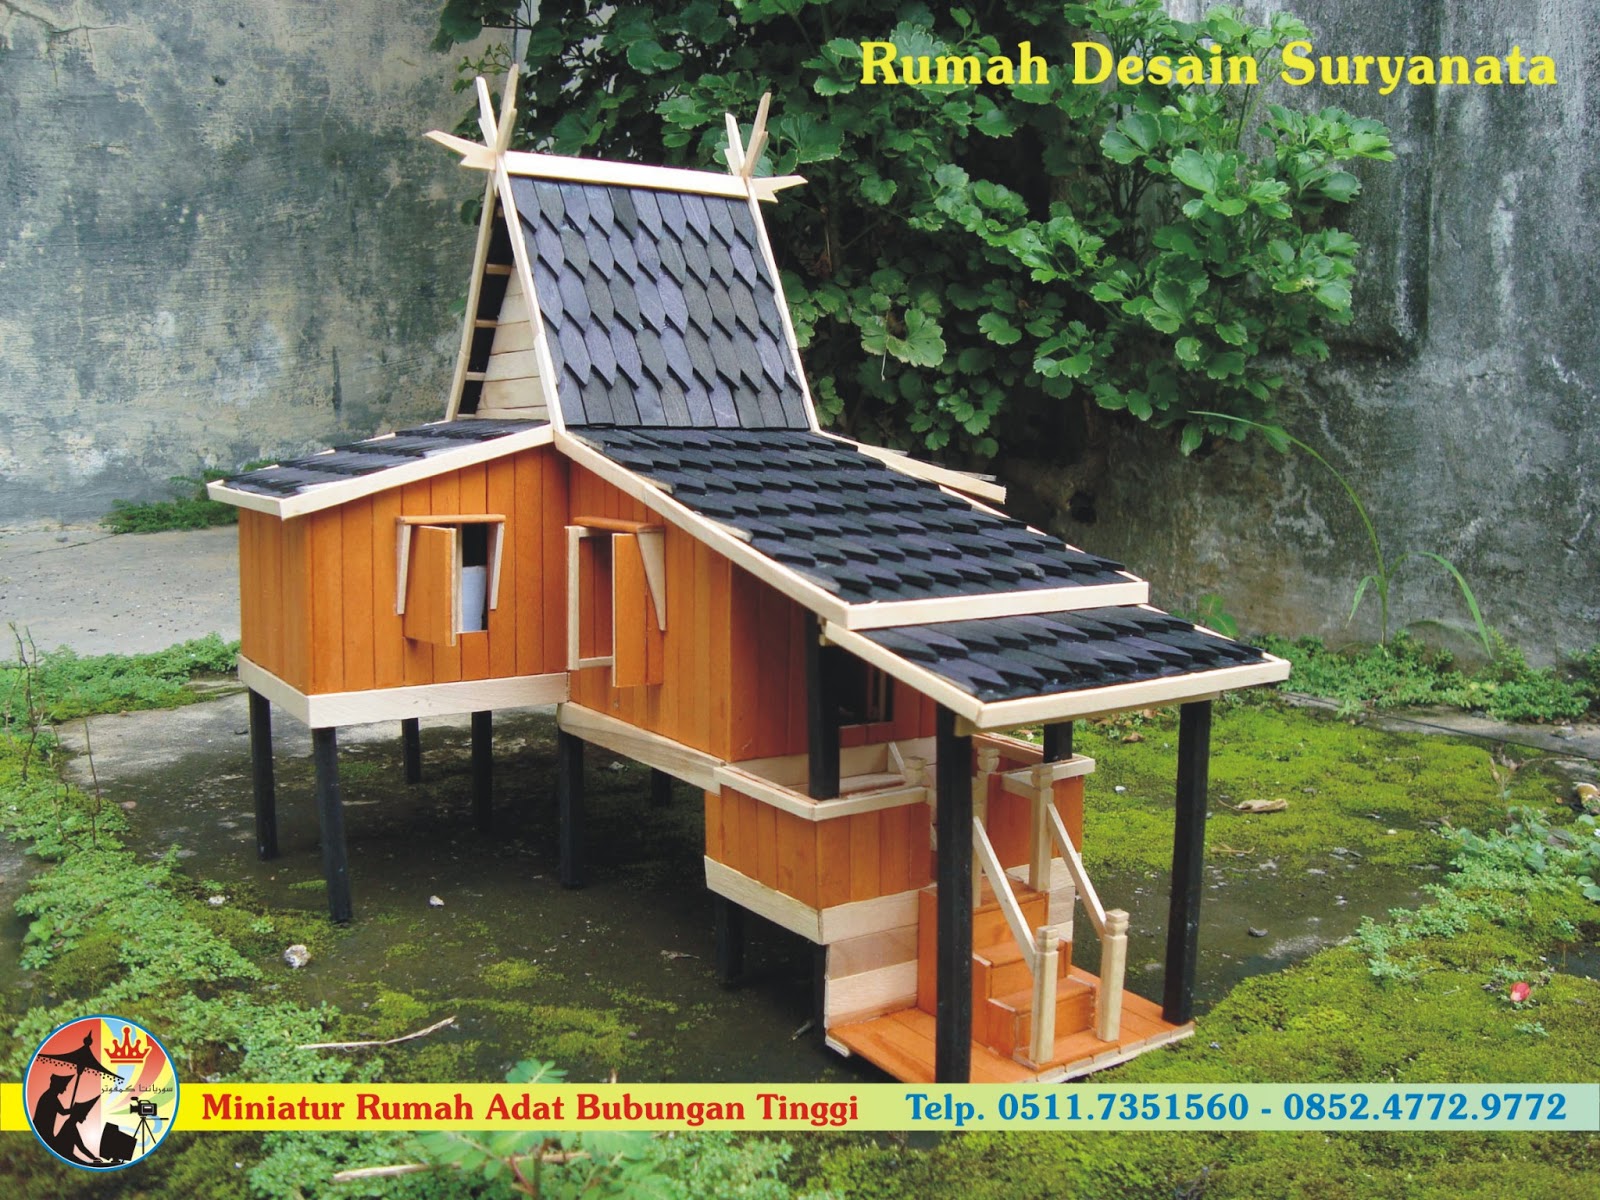 Download this Miniatur Rumah Adat Bubungan Tinggi Full Warna picture